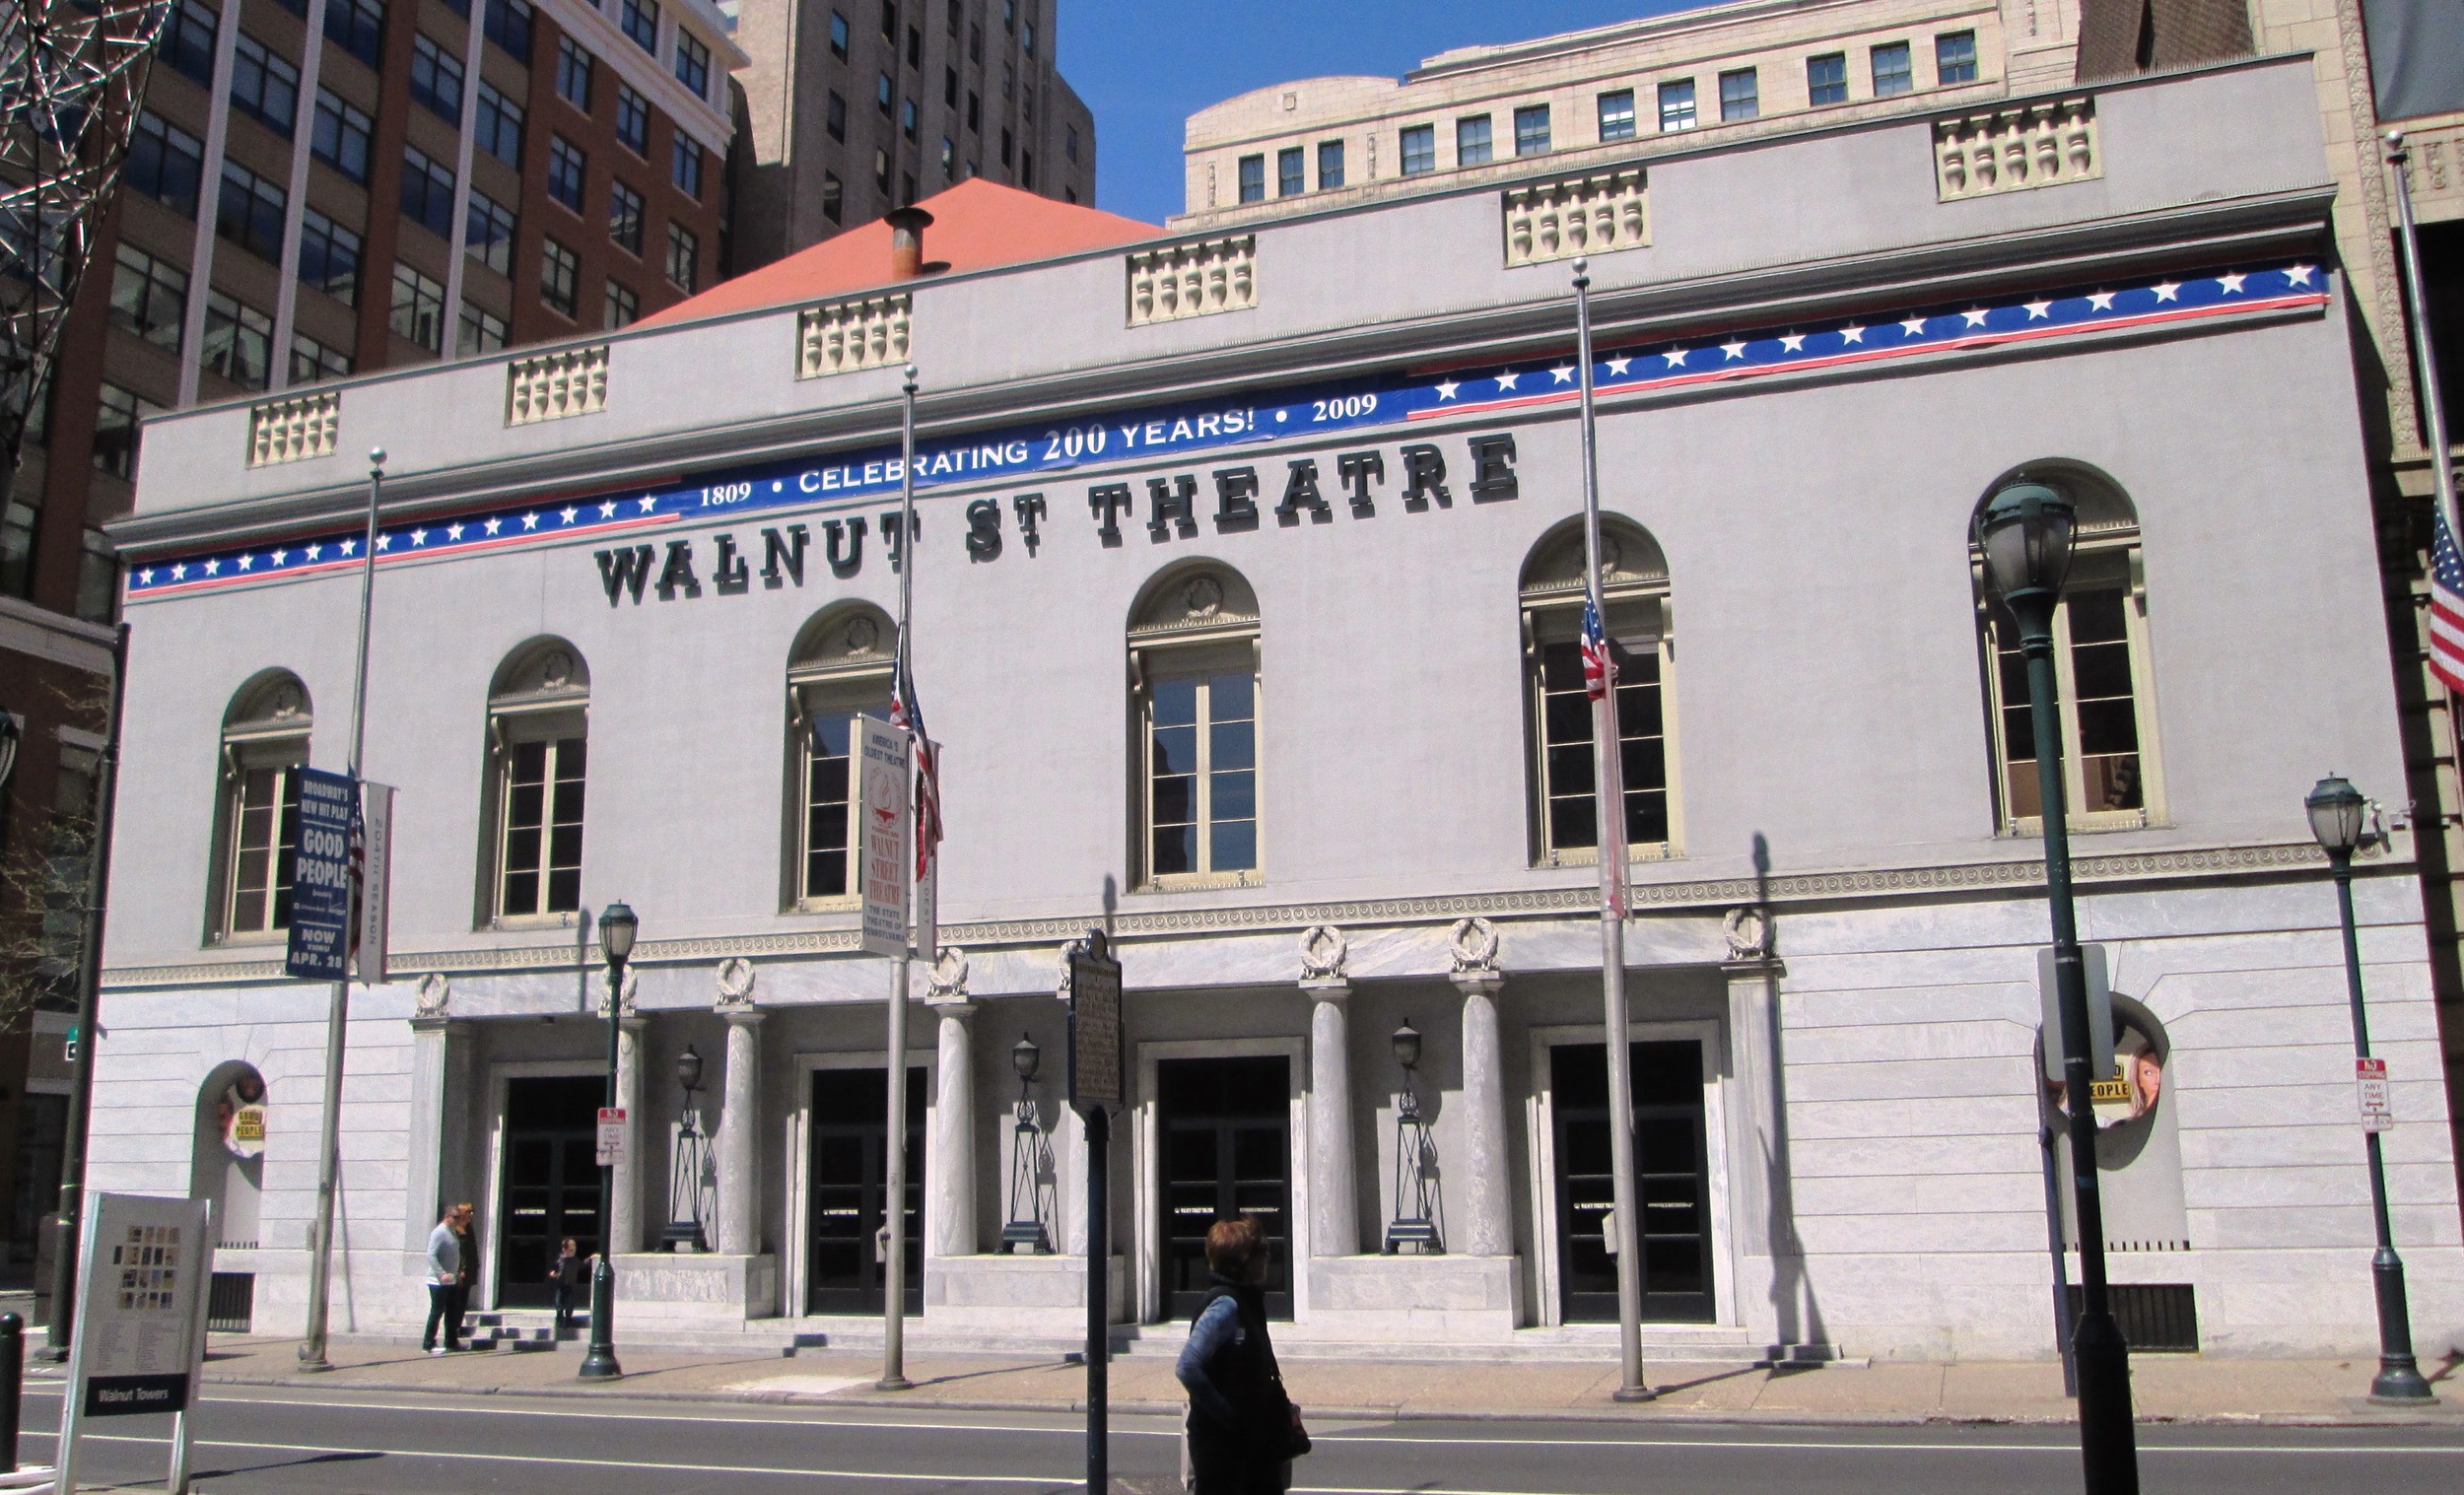 The Walnut Street Theater